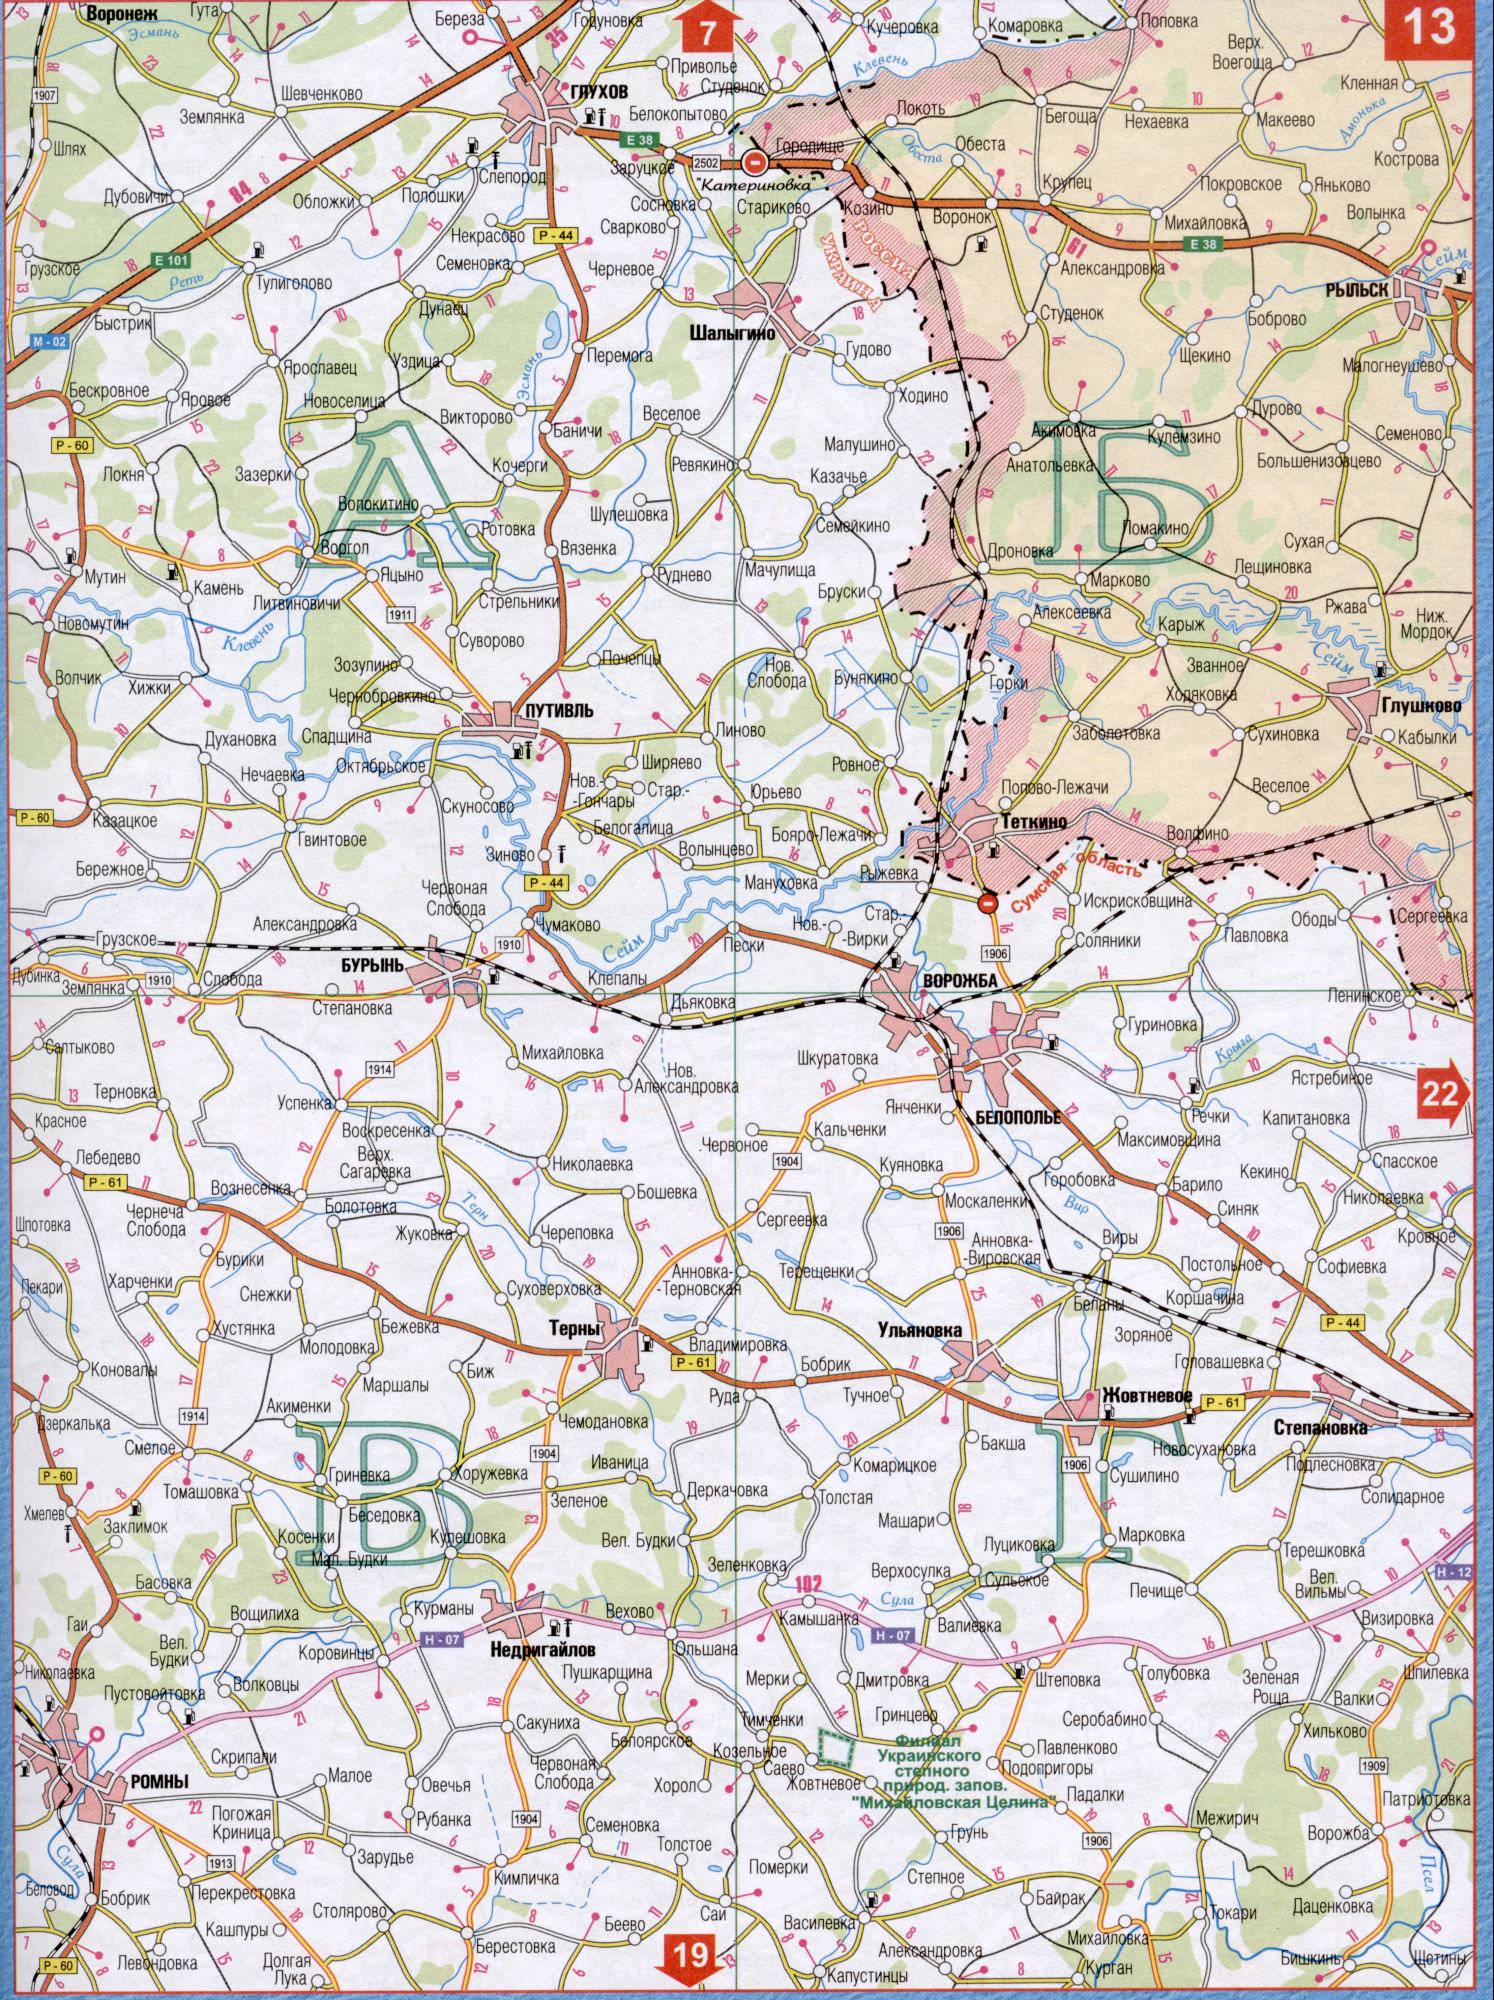 Карта Сумской области Украины (областной центр г.Сумы). Скачать бесплатно подробную карту автомобильных дорог